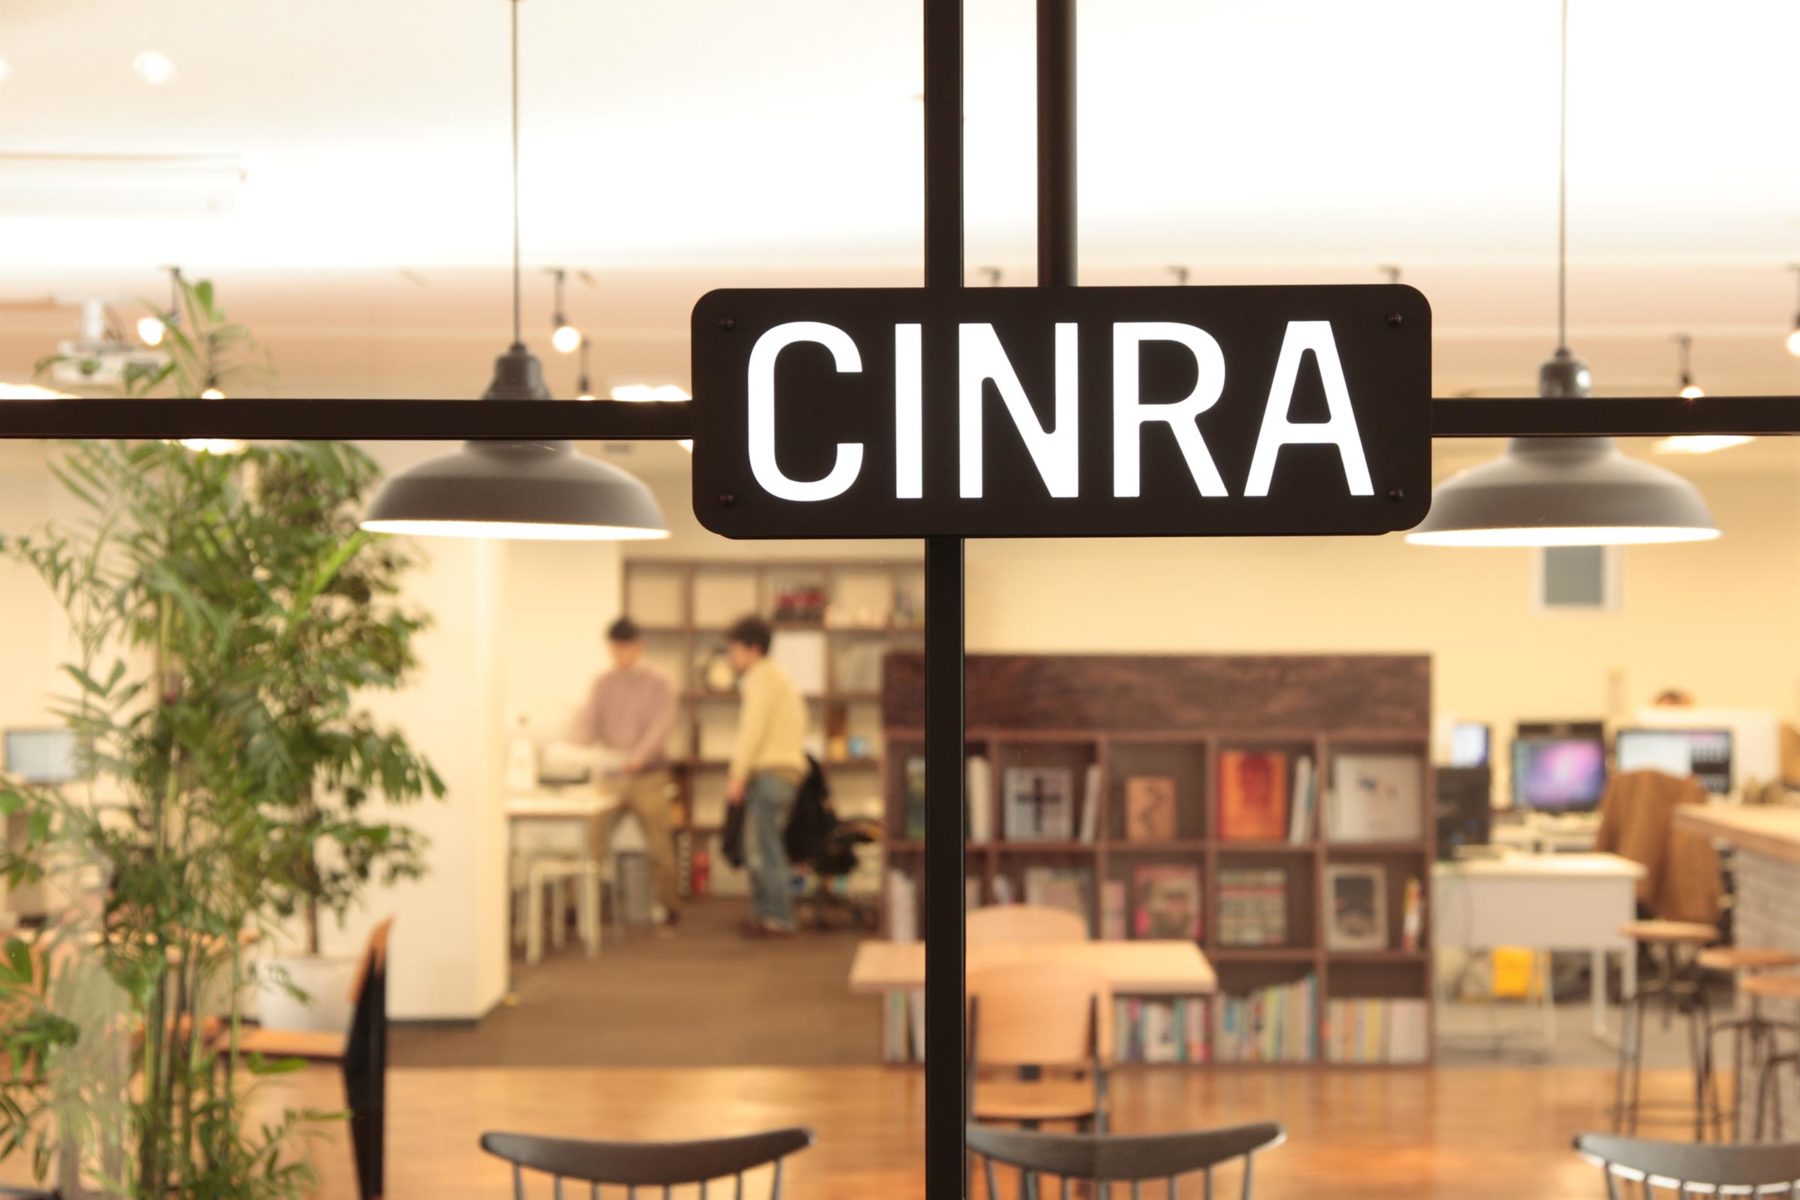 株式会社cinra クリエイティブの求人情報サイト Cinra Job